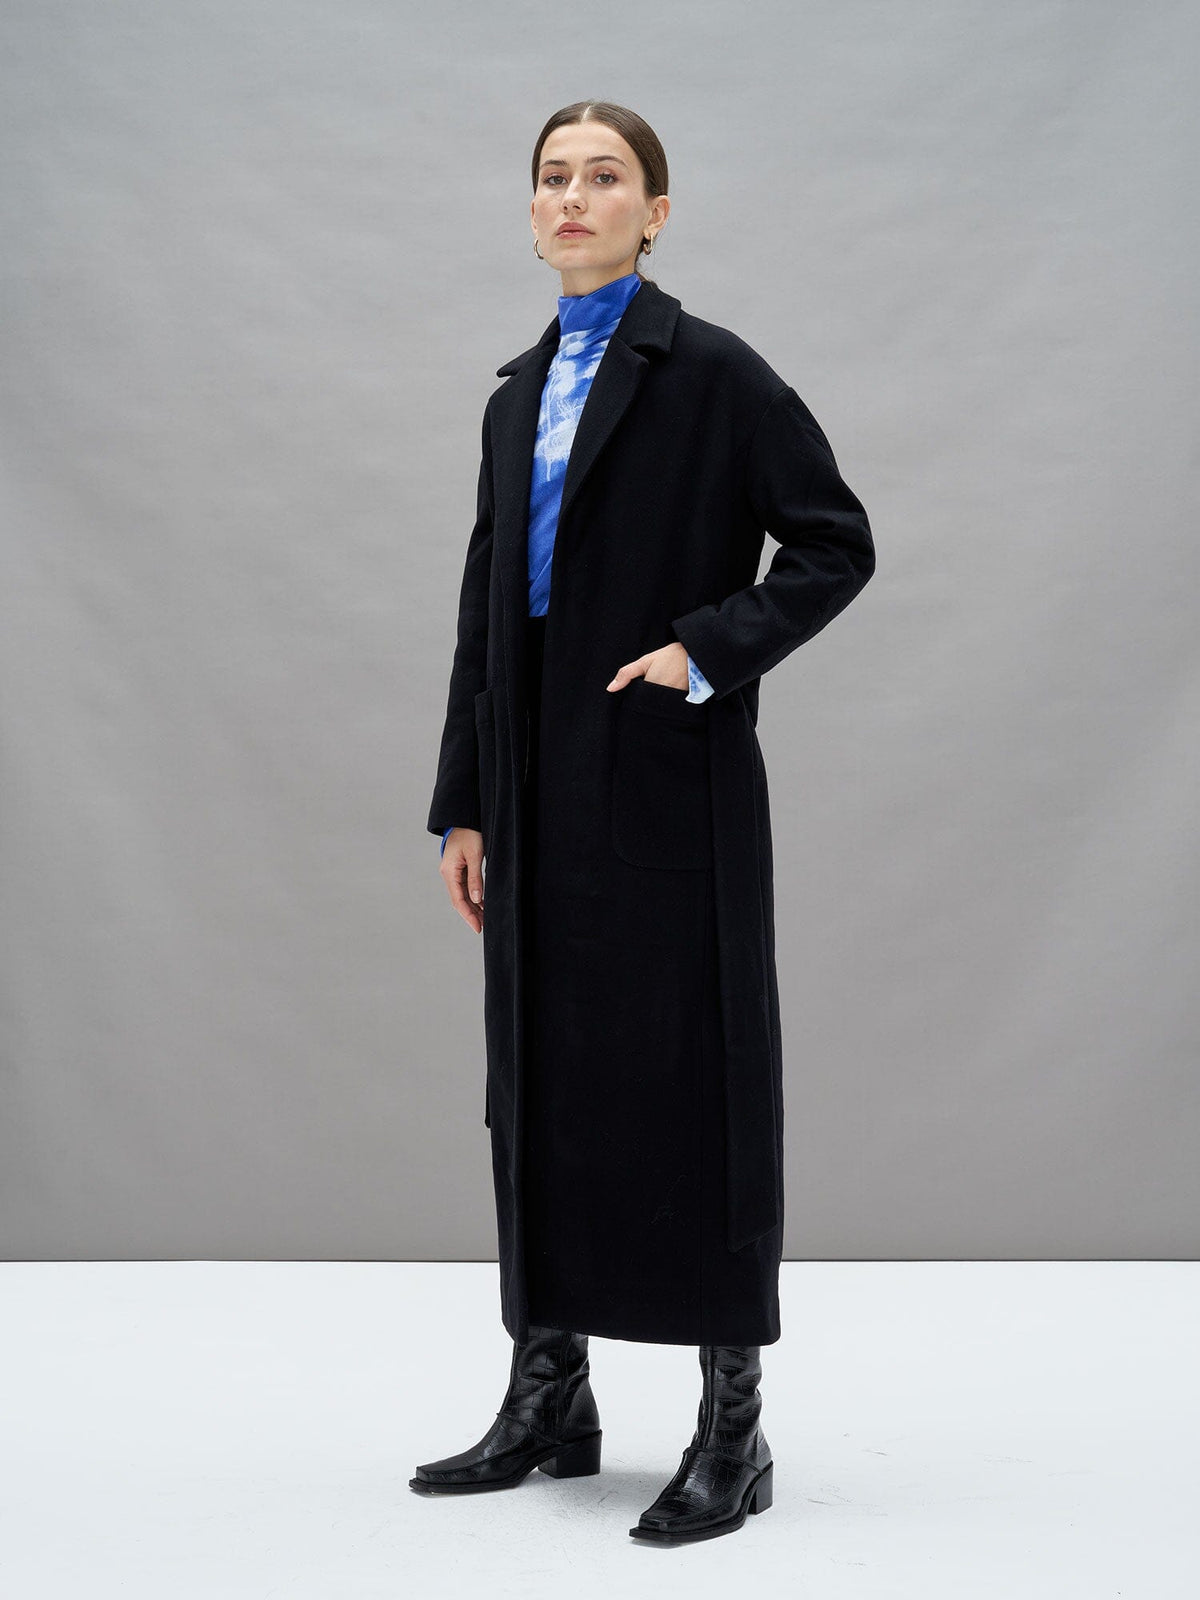 VIRGINIA - Coat, bathrobe, tie belt in virgin wool Black Coat Fête Impériale